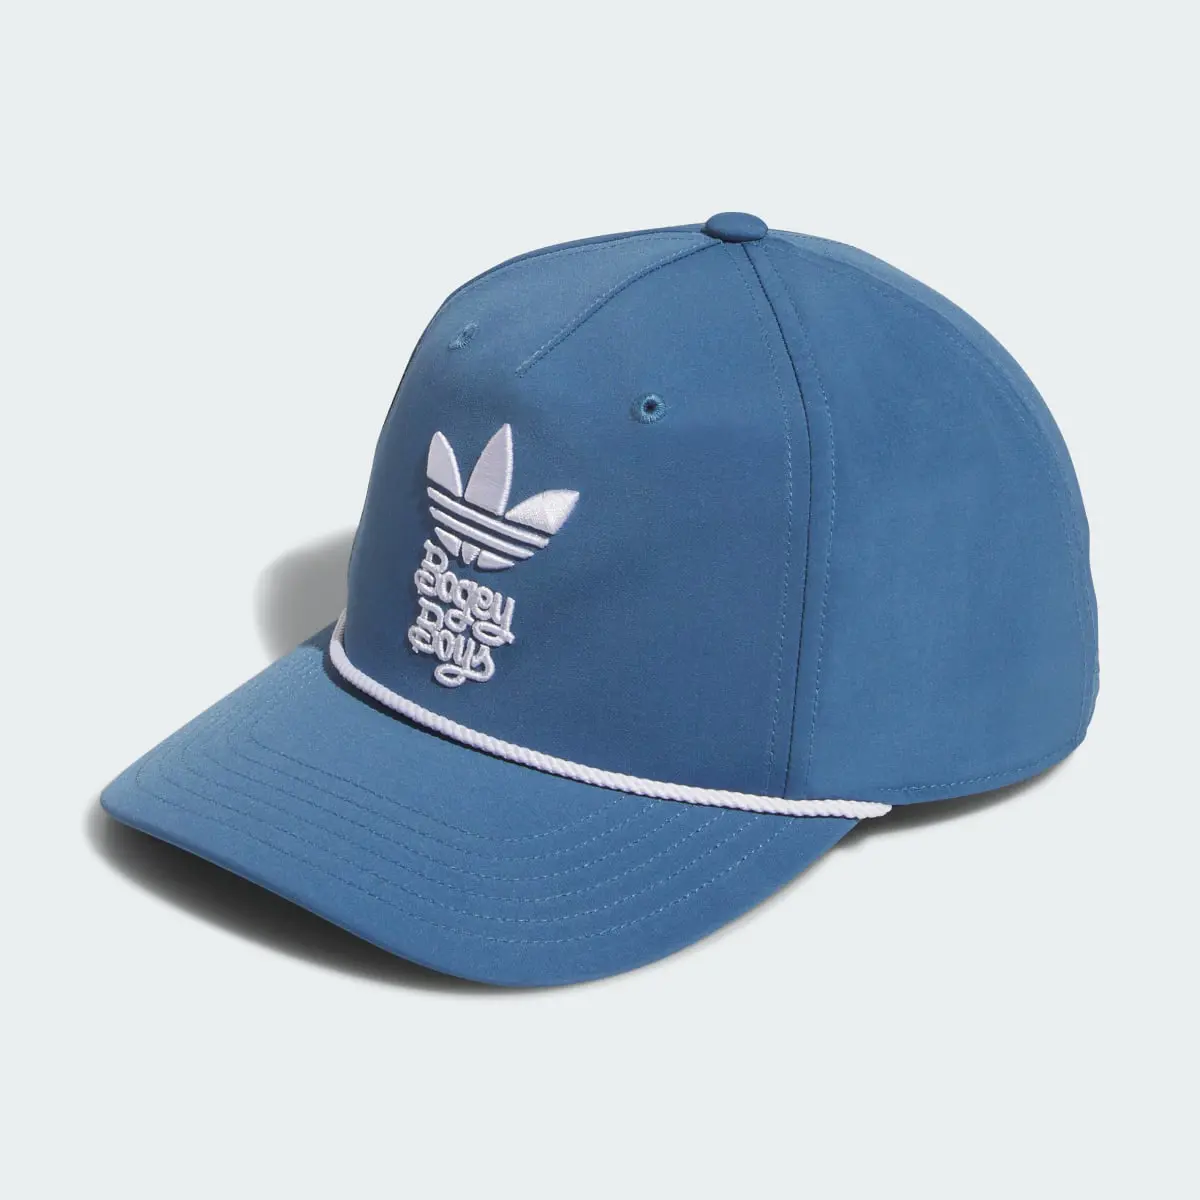 Adidas x Bogey Boys Hat. 2